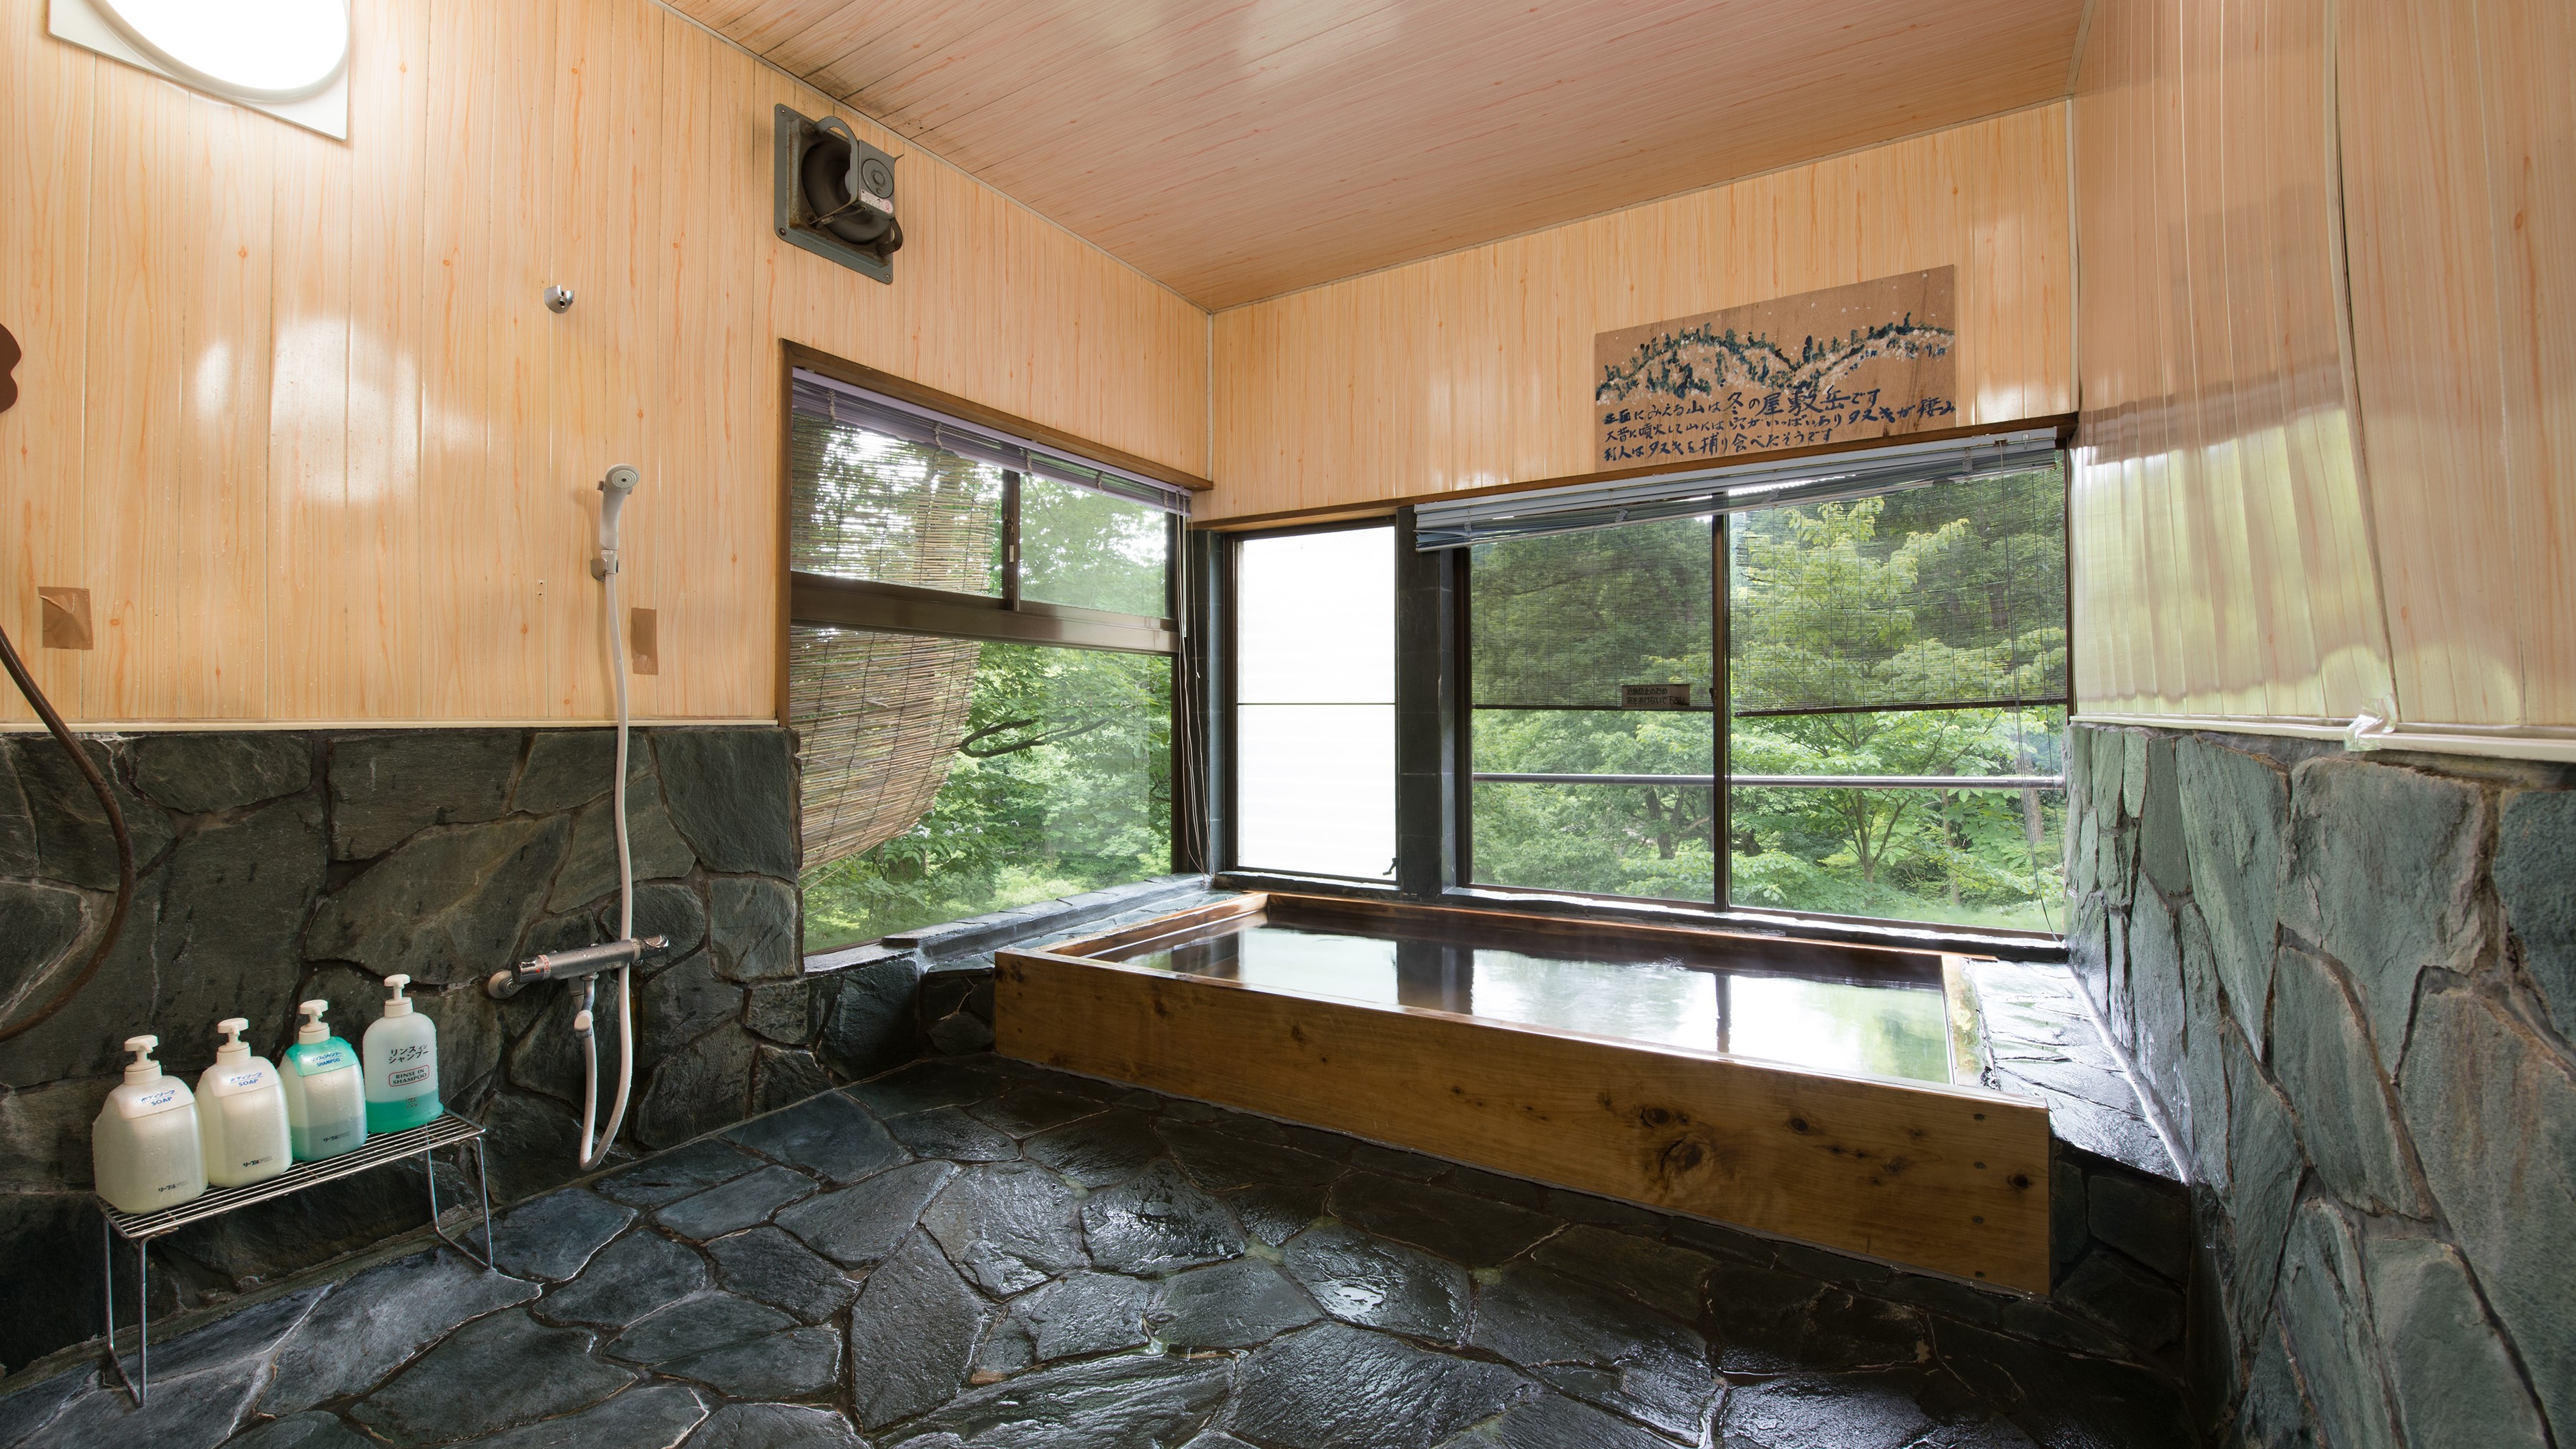 *風呂(男湯大浴場)山のミネラル豊富な湧き水を沸かした内風呂。